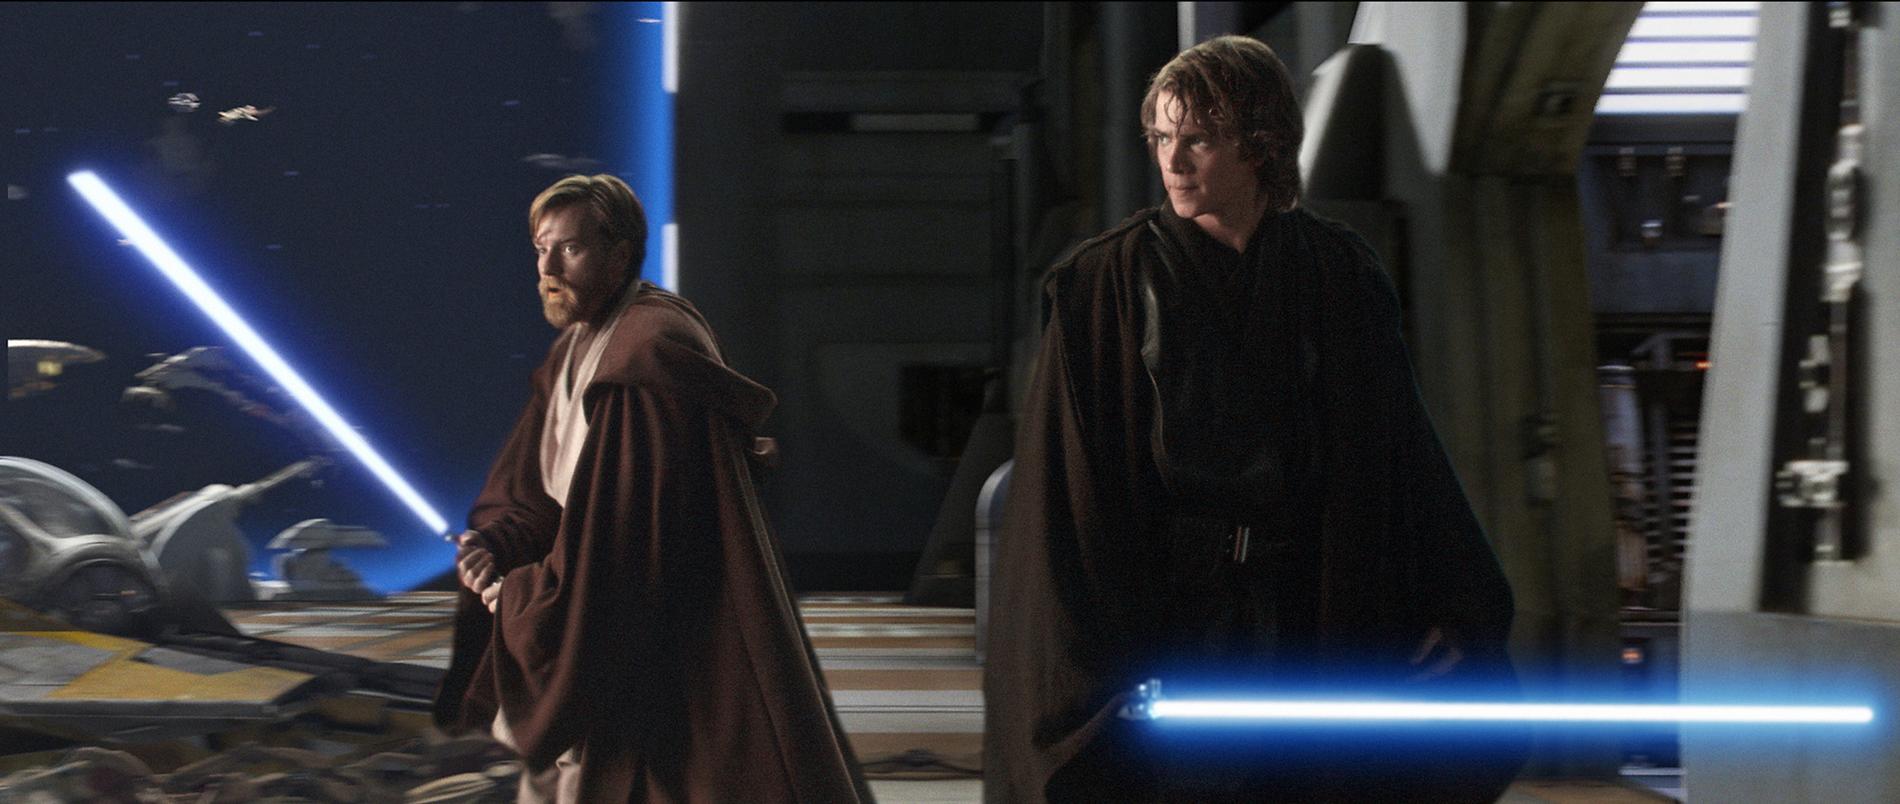 Ewan McGregor (till vänster) som Obi-Wan Kenobi tillsammans med Hayden Christensen i rollen som Anakin Skywalker i "Revenge of the sith" från 2005. Arkivbild.